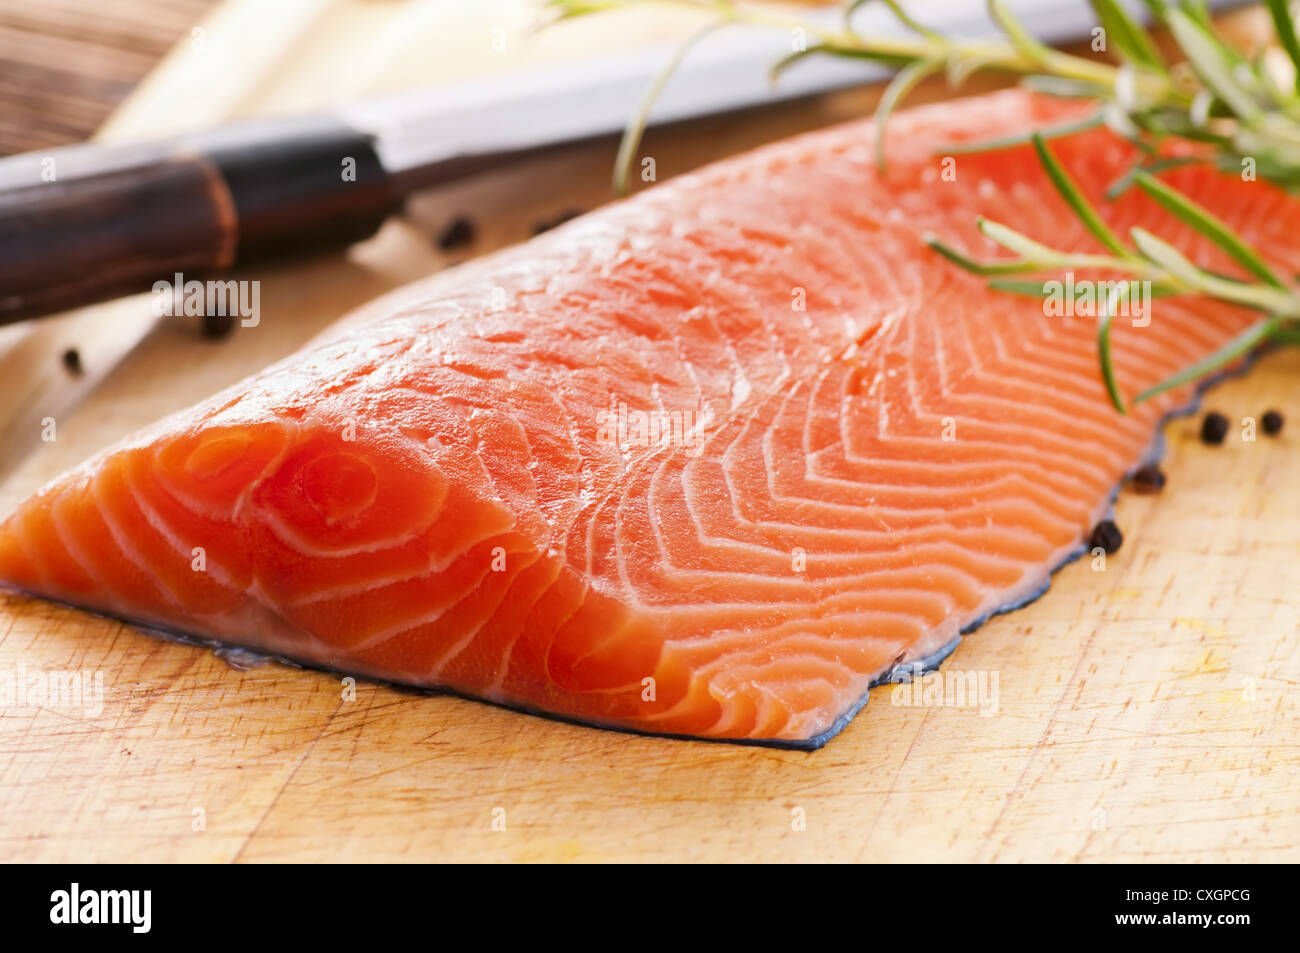 salmon filet with fresh herbs Stock Photo